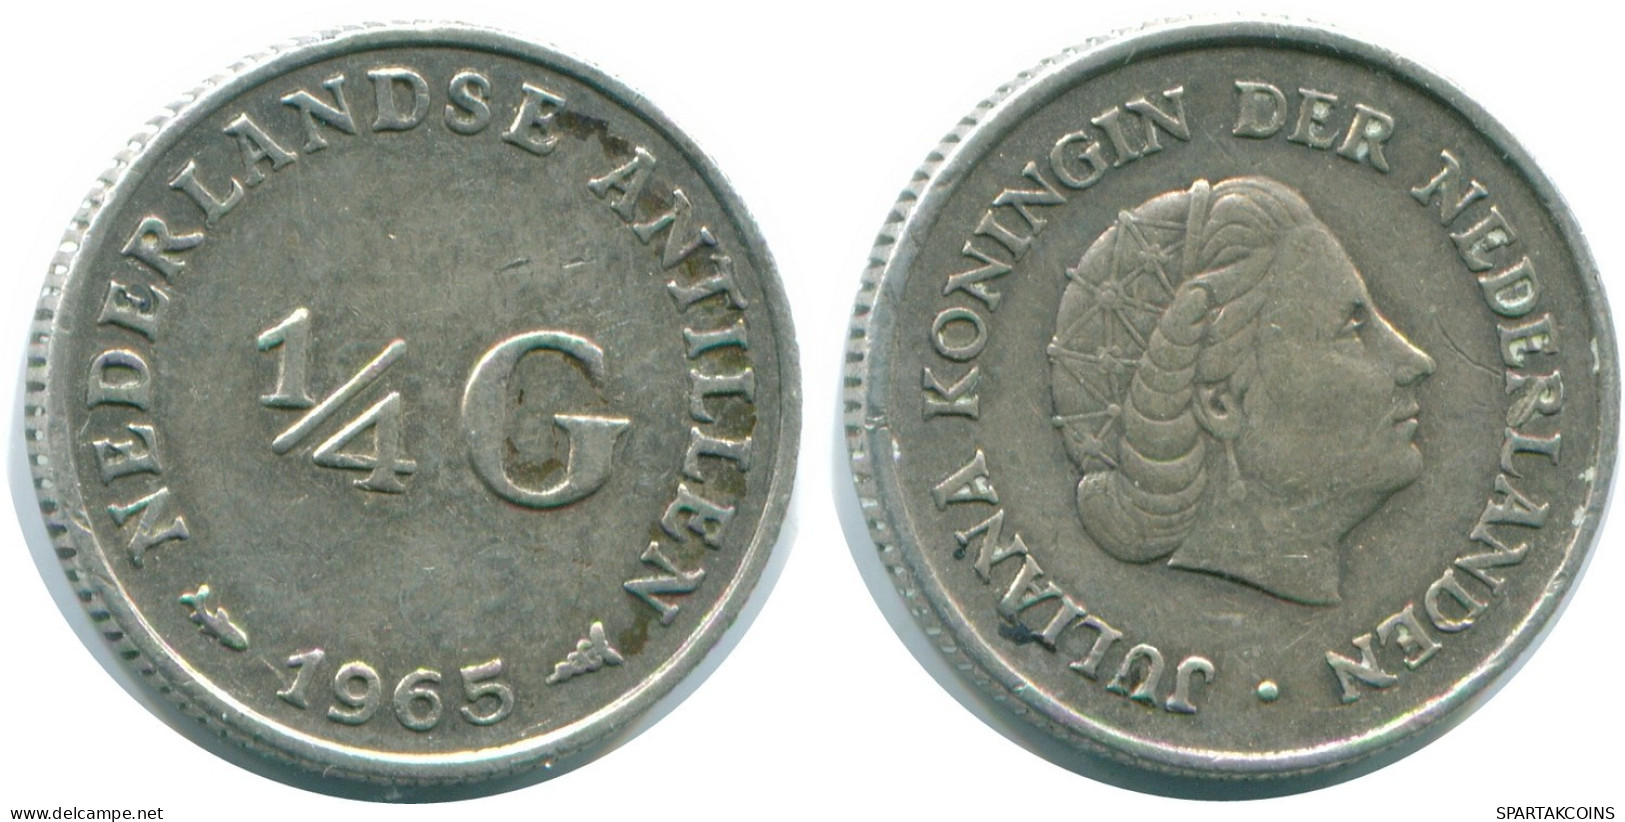 1/4 GULDEN 1965 NIEDERLÄNDISCHE ANTILLEN SILBER Koloniale Münze #NL11366.4.D.A - Antillas Neerlandesas